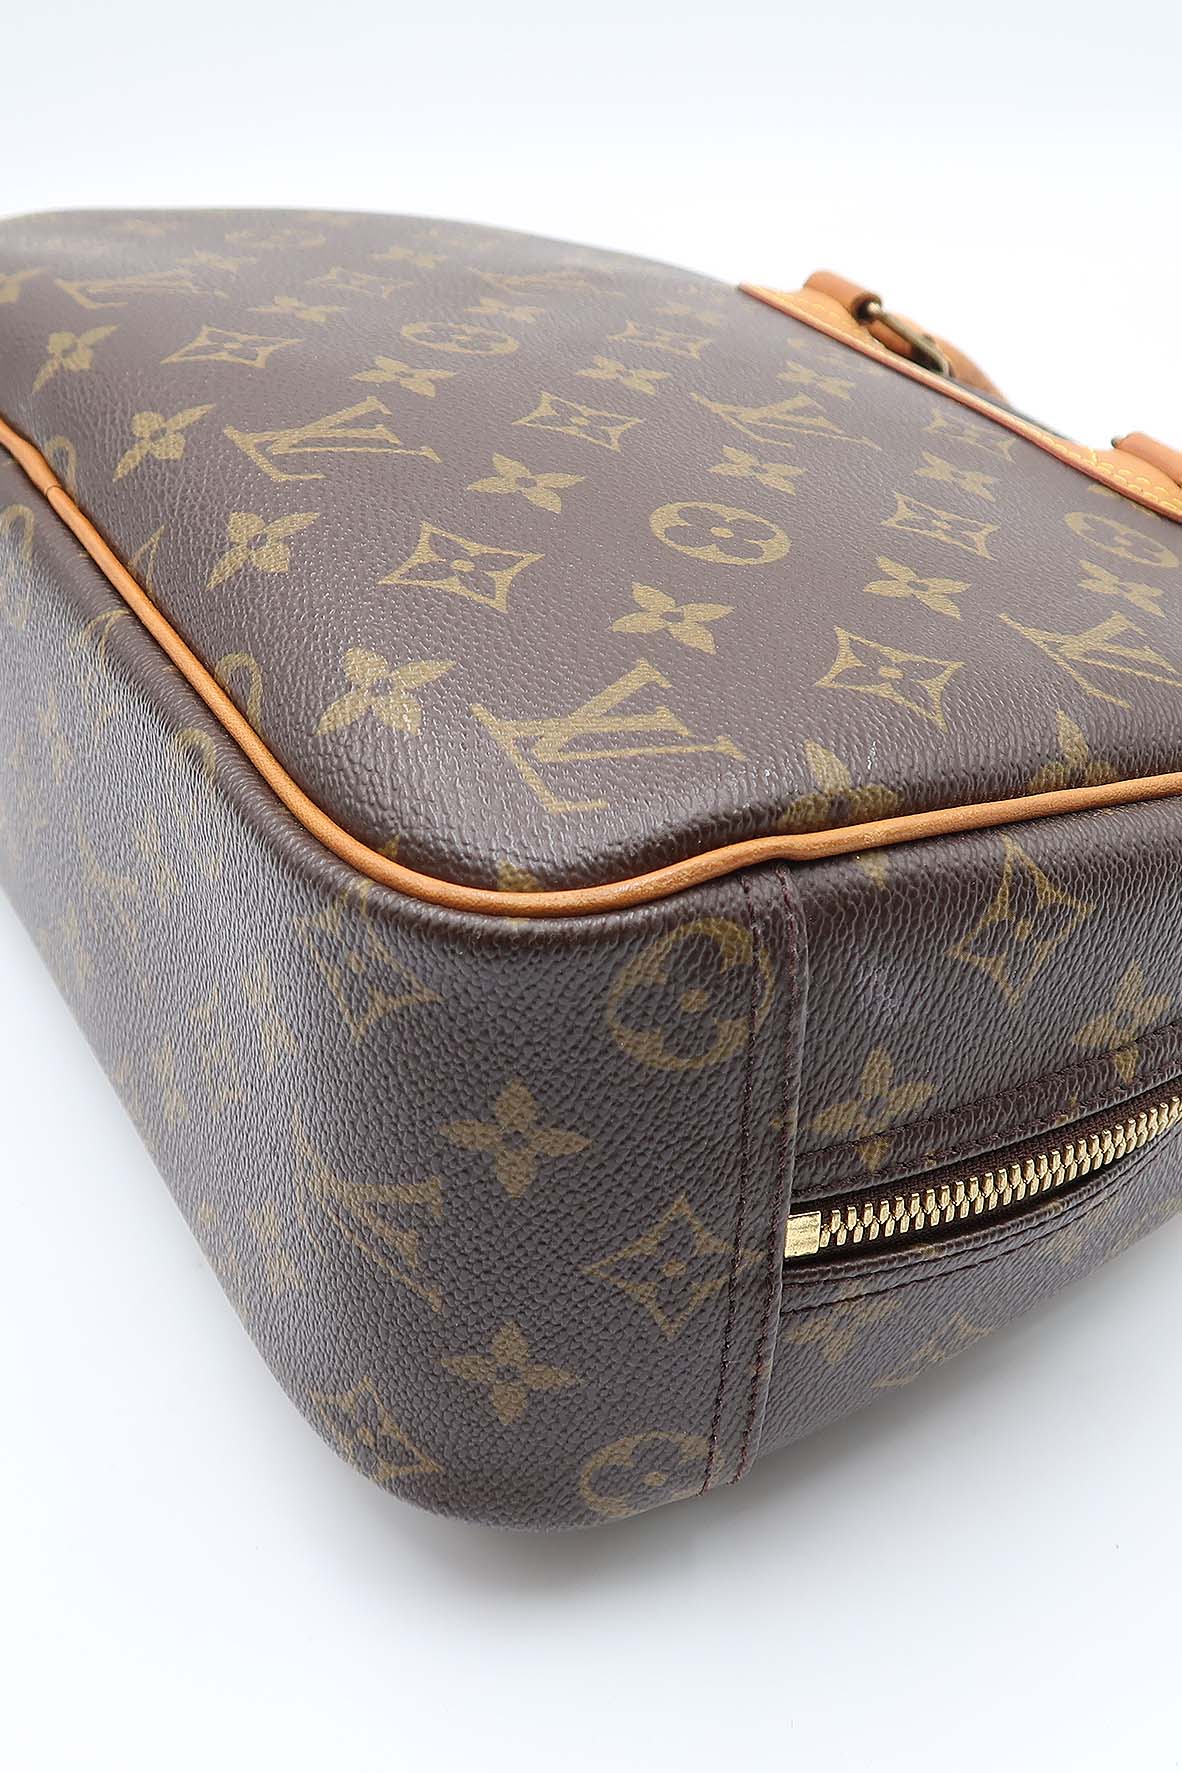 Louis Vuitton Trouville Handbag Monogram Canvas Brown 22176397